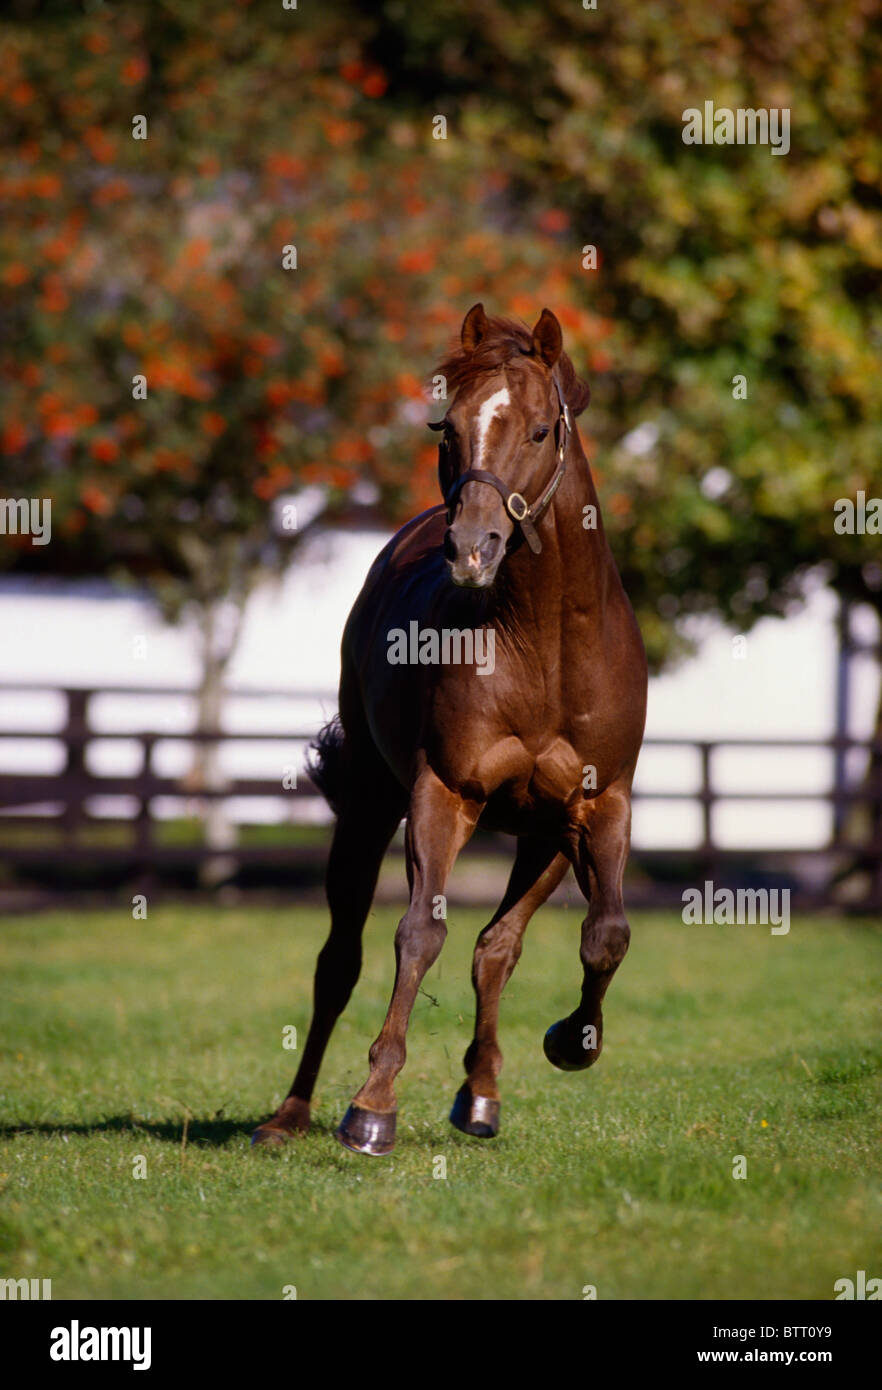 Thoroughbred Horse, Ireland Stock Photo